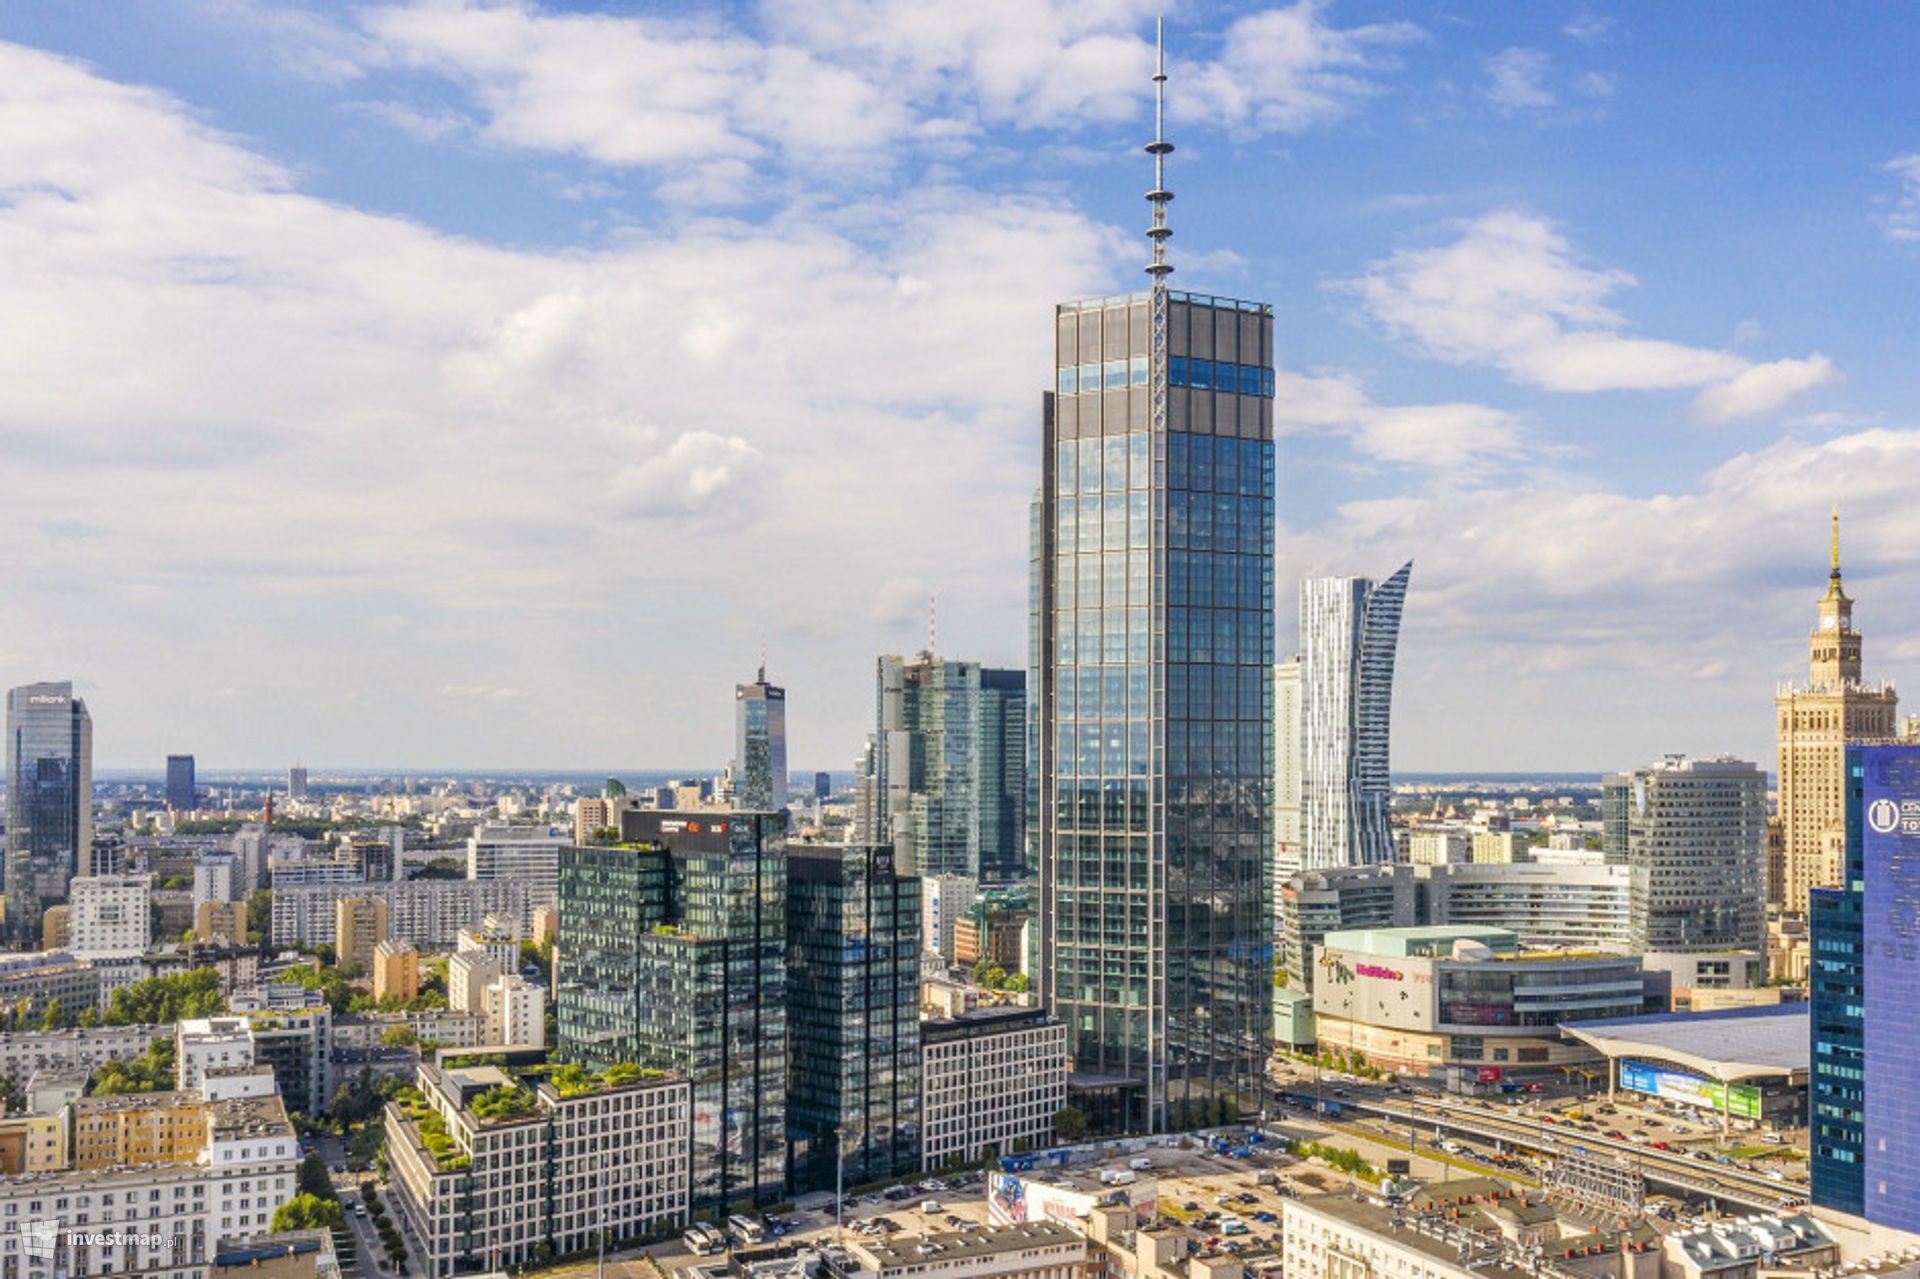 Najwyższy wieżowiec w Warszawie i Unii Europejskiej, 310-metrowy biurowiec Varso Tower gotowy 